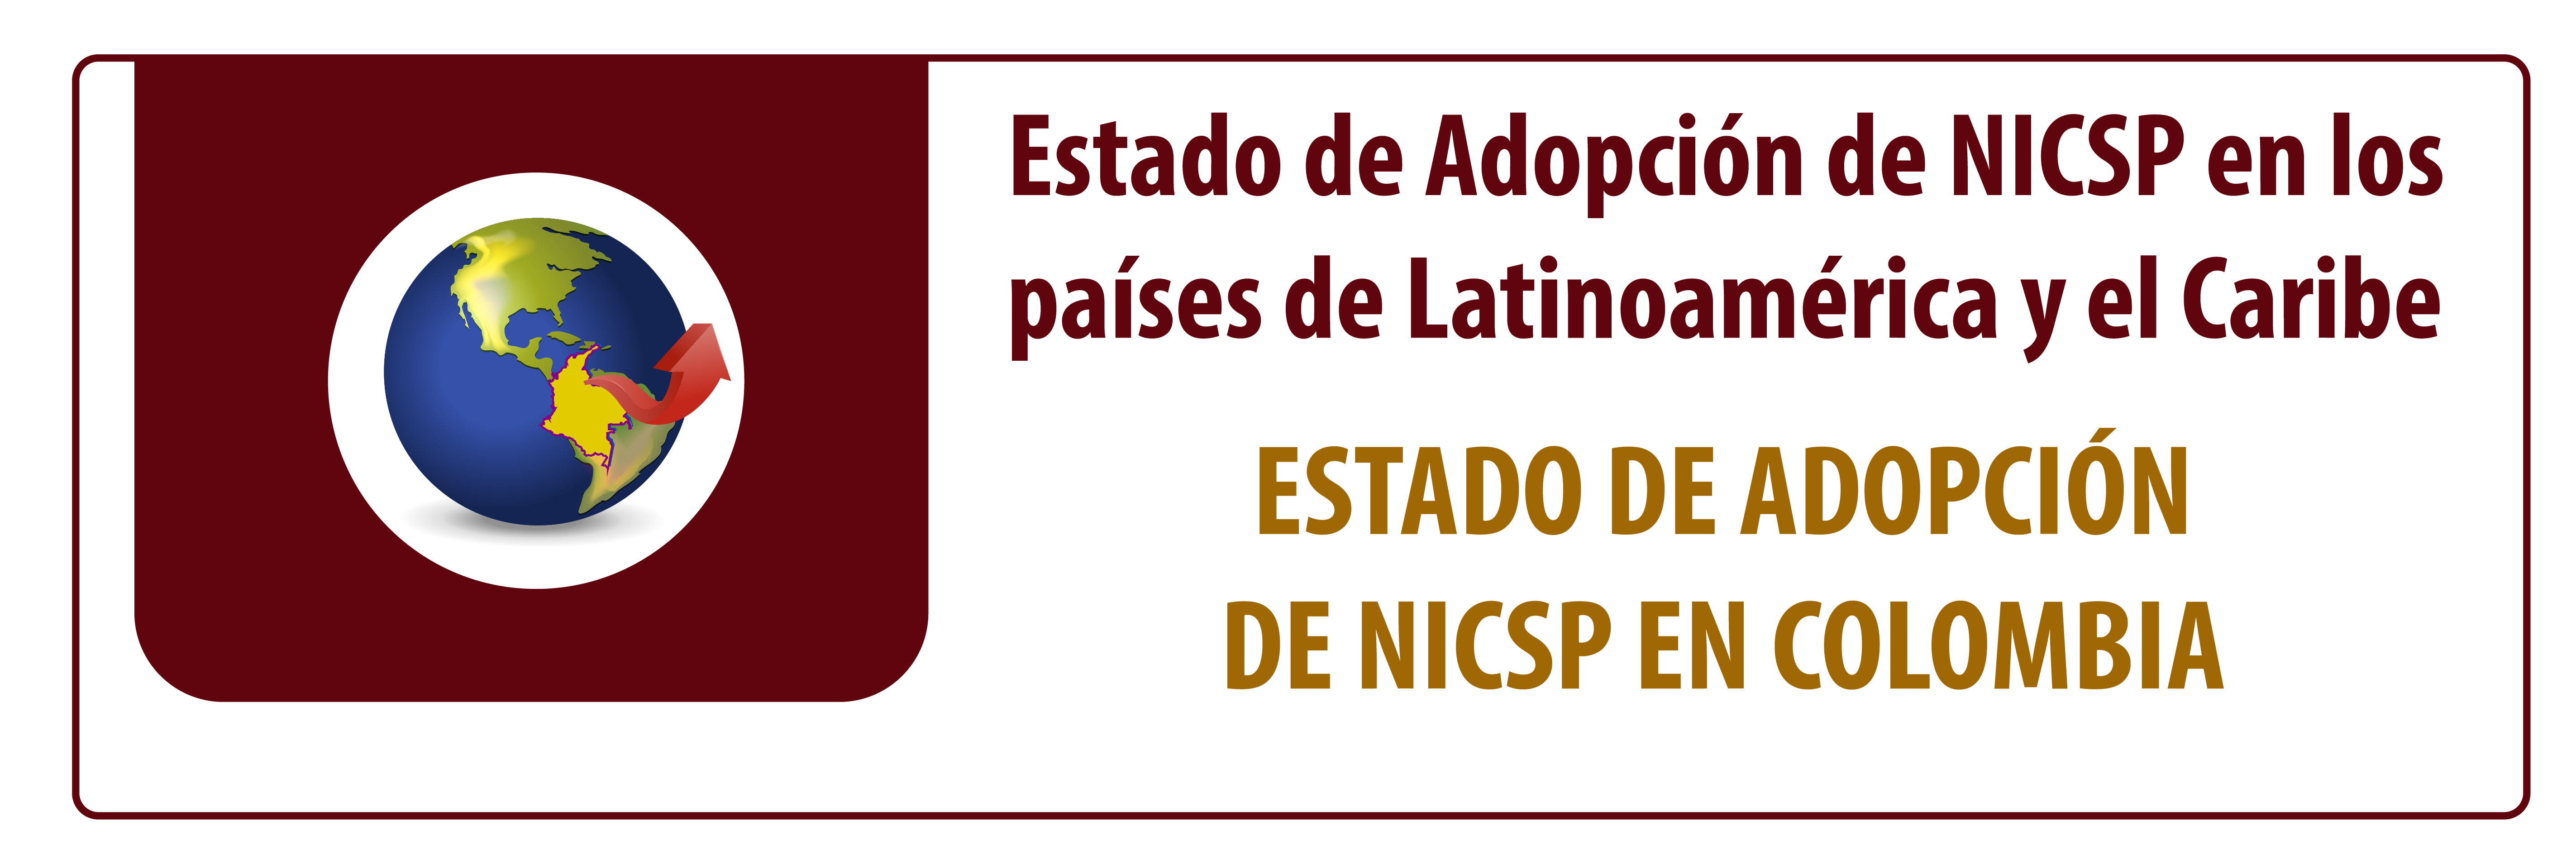 Estado NICSP en Colombia